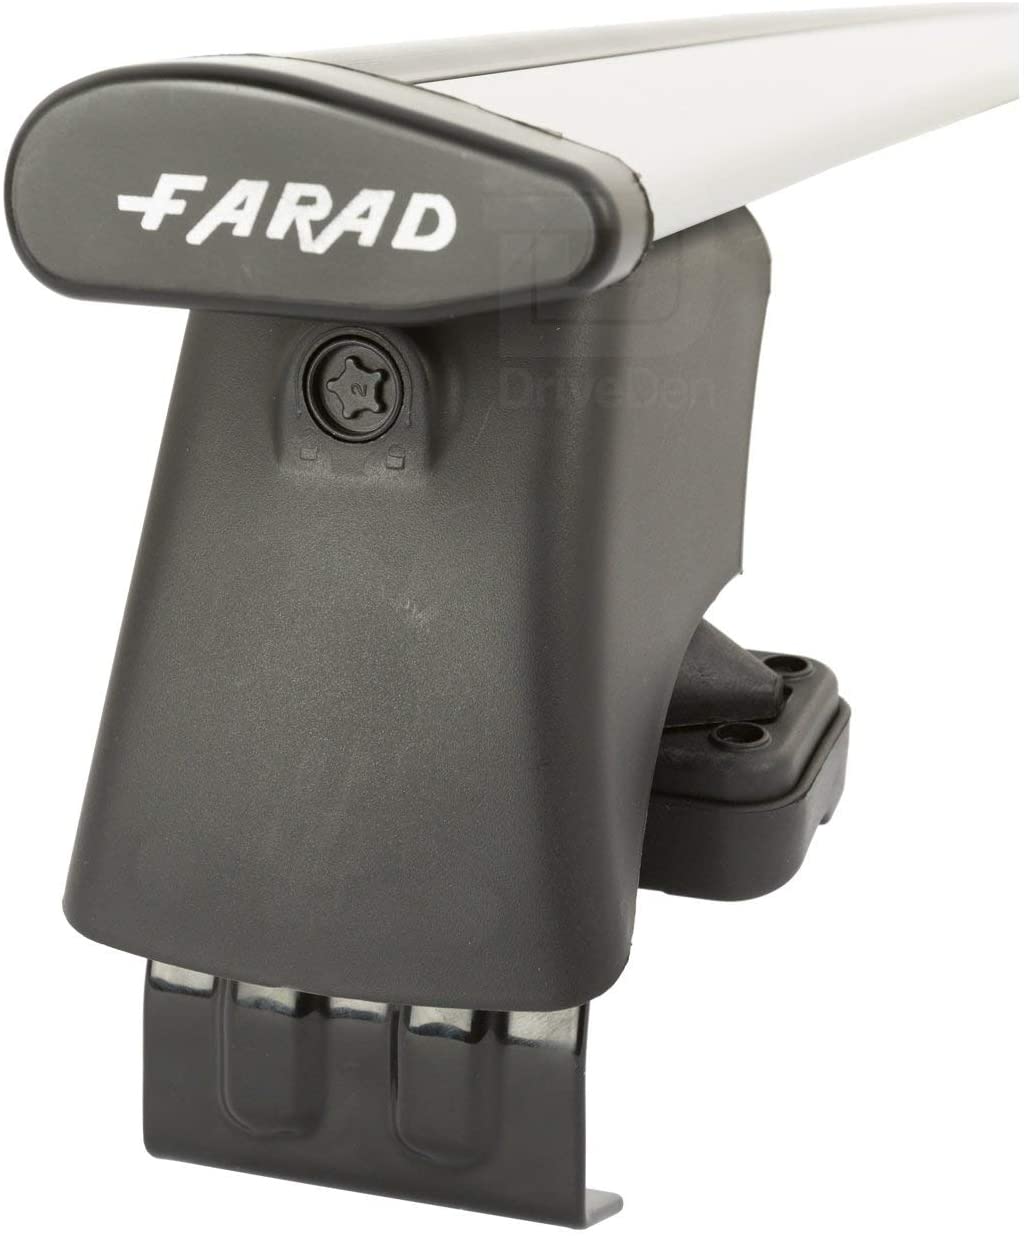 FARAD-Kit H2 per barre portatutto - Citroen Grand C4 Picasso 2006-2013 (senza corrimano)